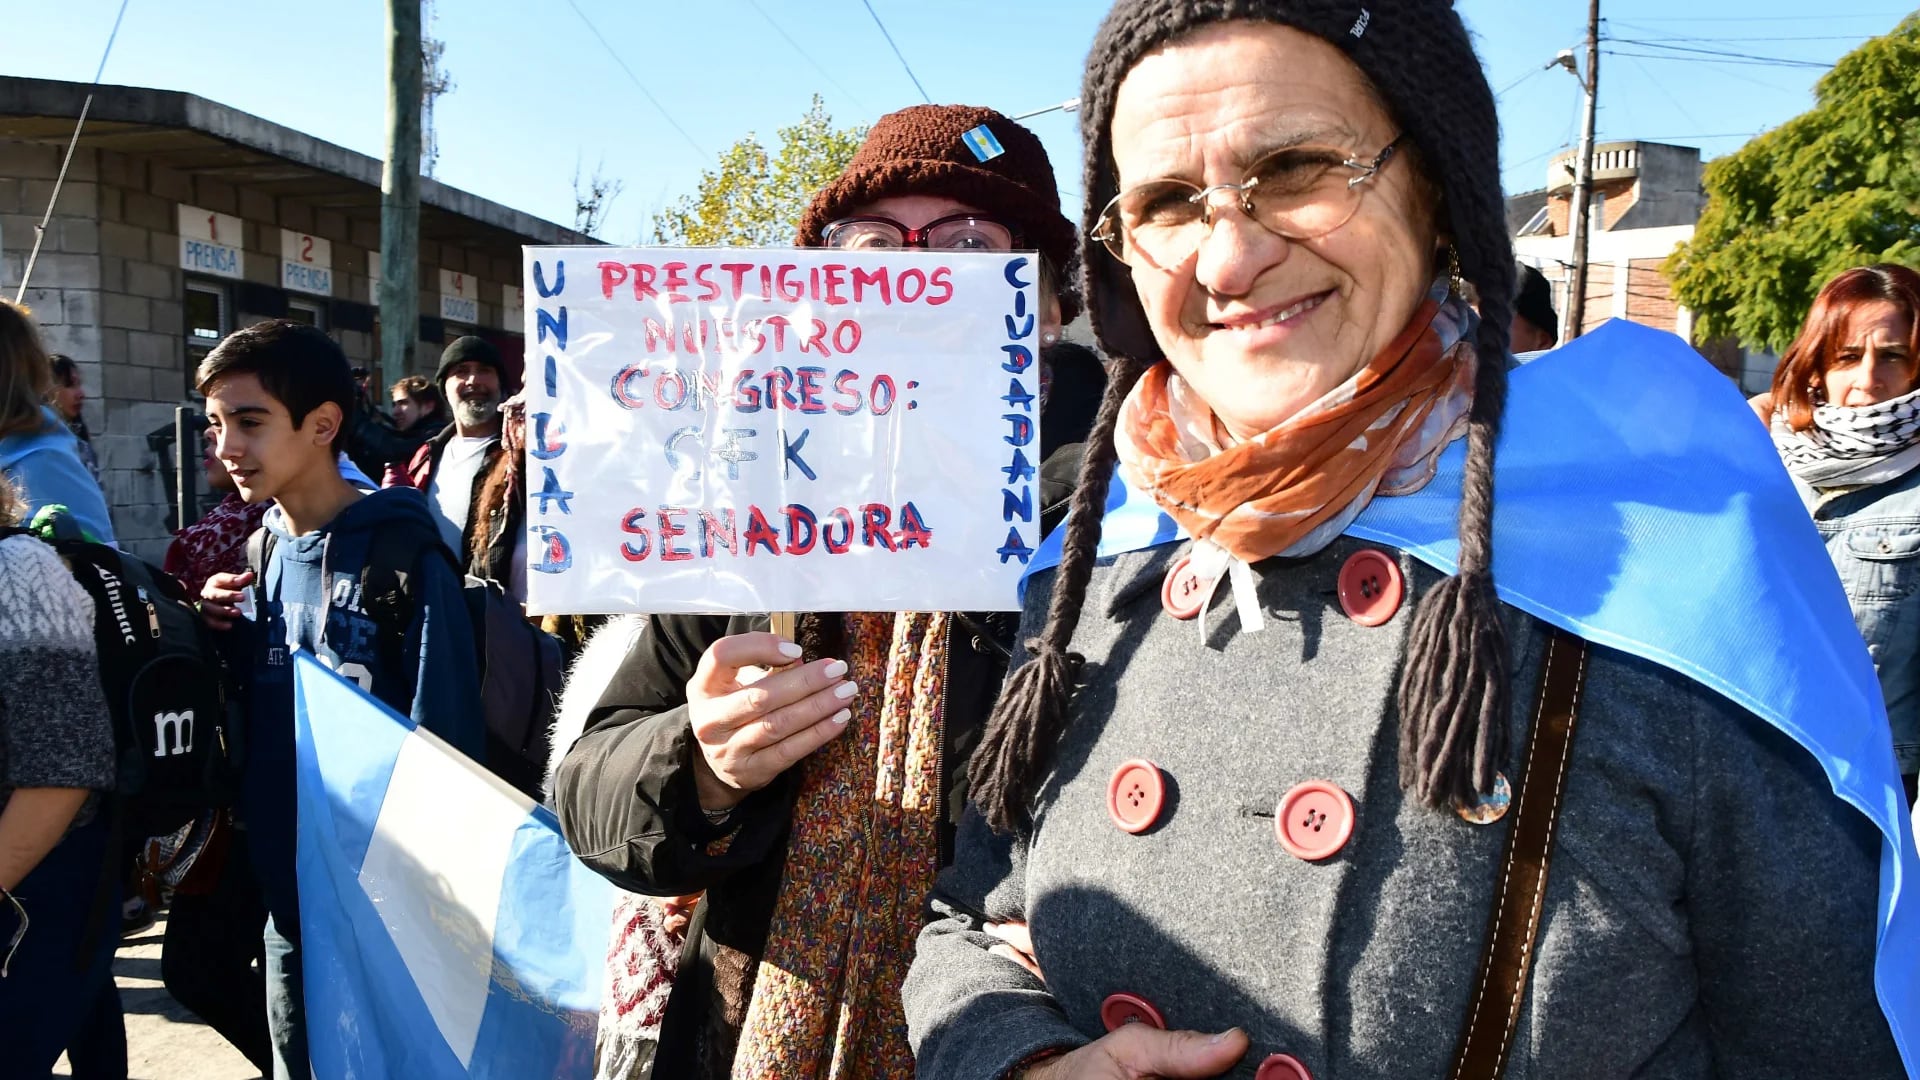 “Prestigiemos nuestro Congreso: CFK senadora”, pide una seguidora de la ex Presidente